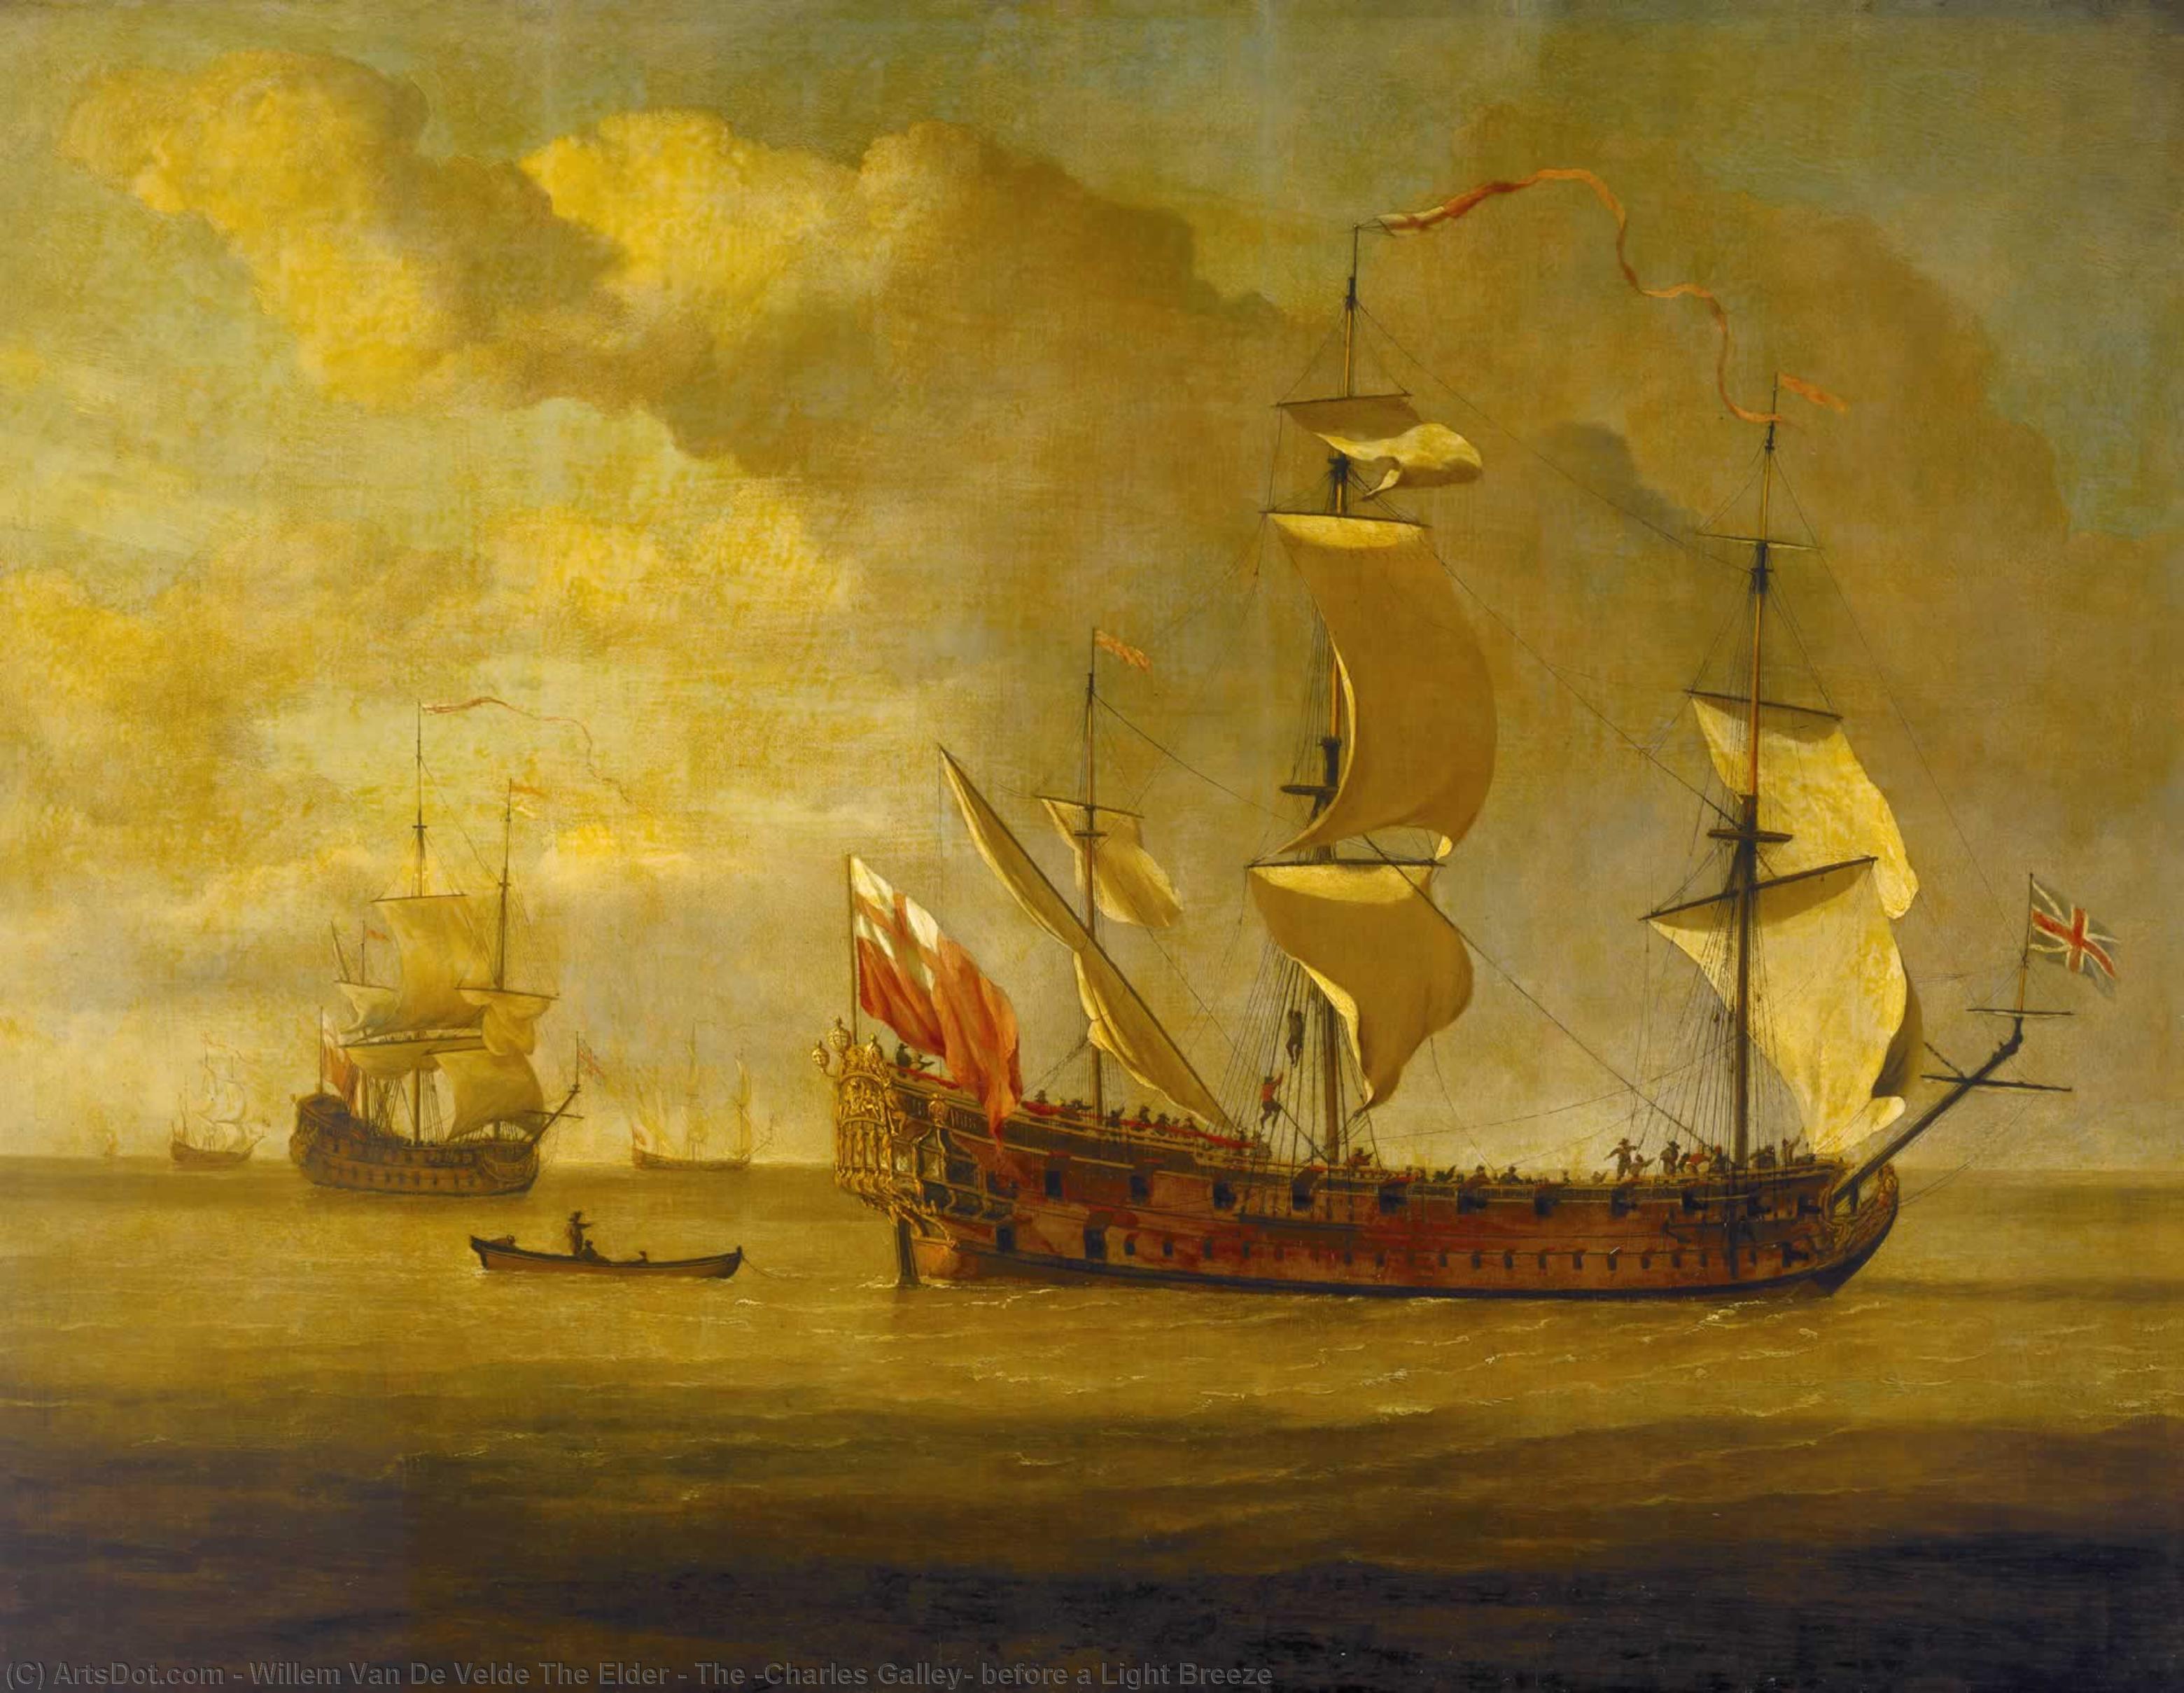 Гребной фрегат. Willem van de Velde портреты кораблей 17 века. Ван де Вельде гравюра Фрегат Галеон.